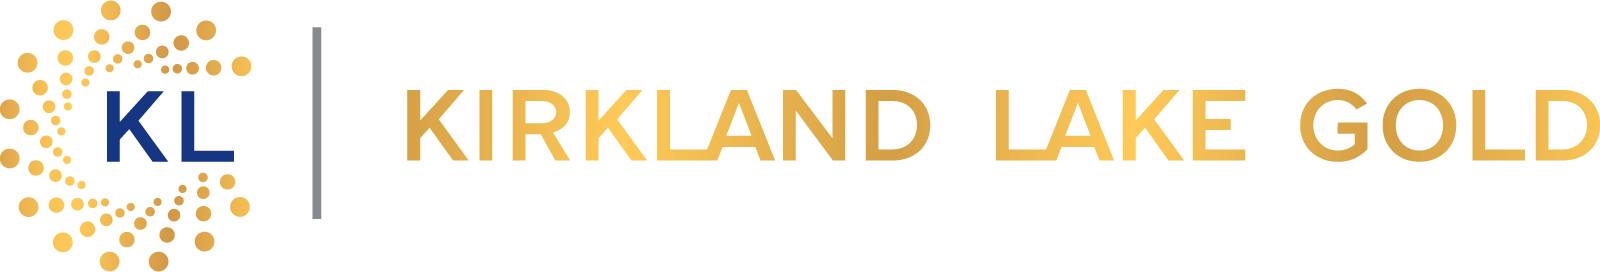 Kirkland-Göl-Altın